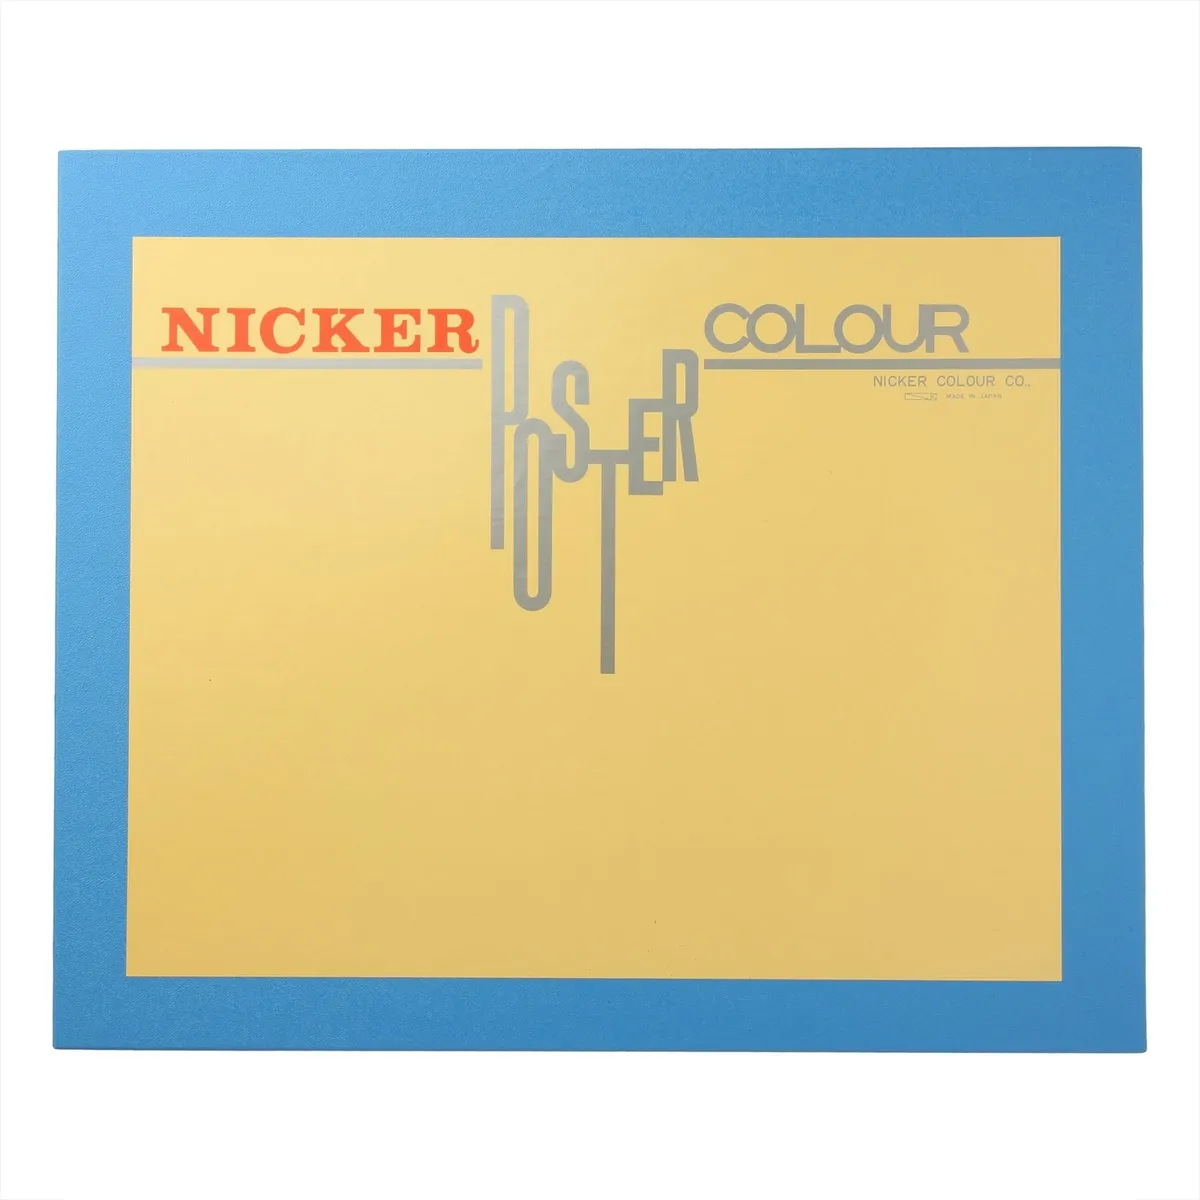 Knicker PC40ML18N Watercolor Paint Poster Color, 18 Color Set, 1.4 fl oz (40 ml)